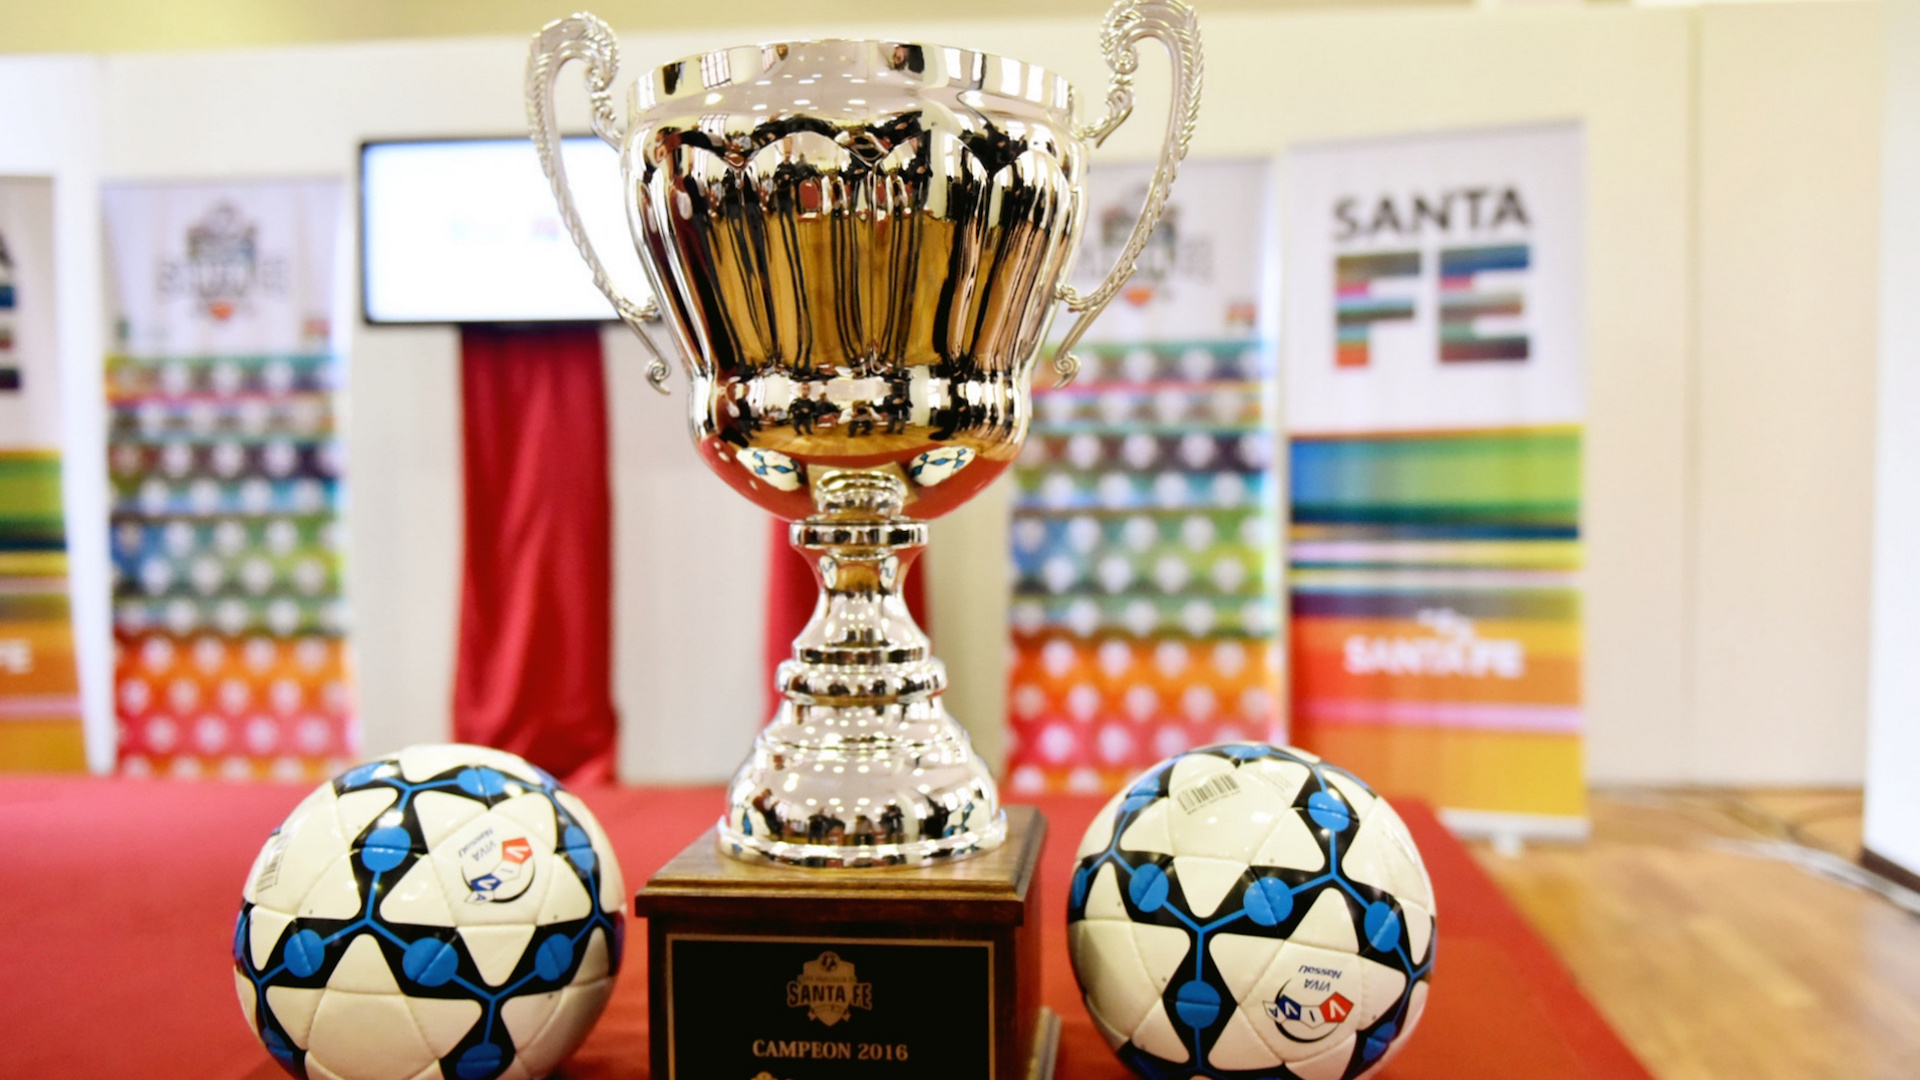 San Telmo, Defensores de Funes y Grupo Ekipo competirán por entrar a la Copa Santa Fe